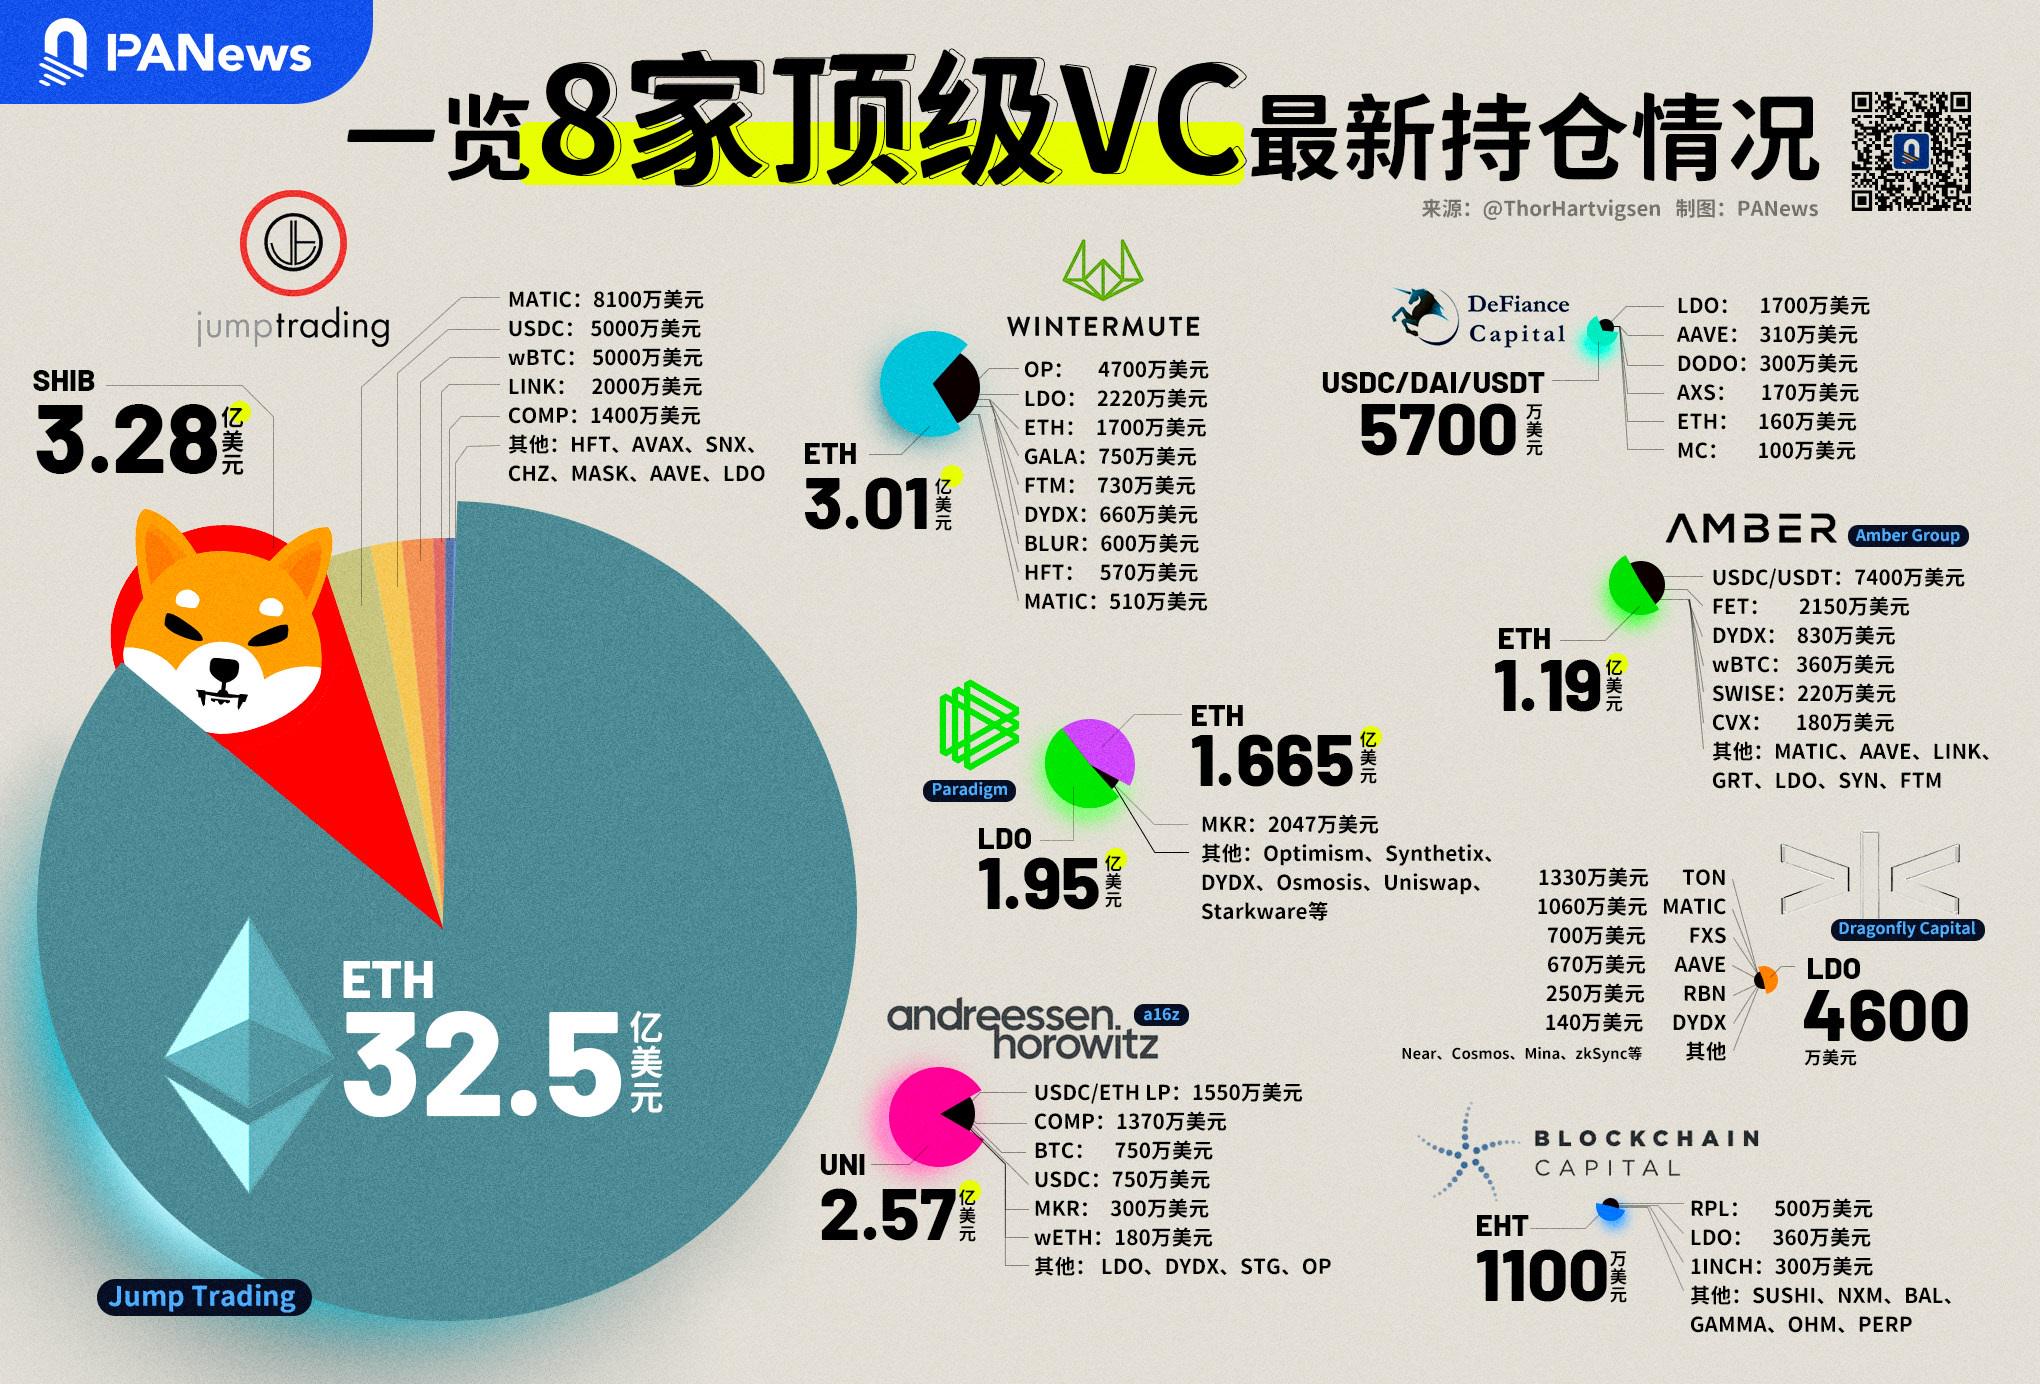 鏈上數據揭露頭部VC們在最近這波行情中賺了多少錢？